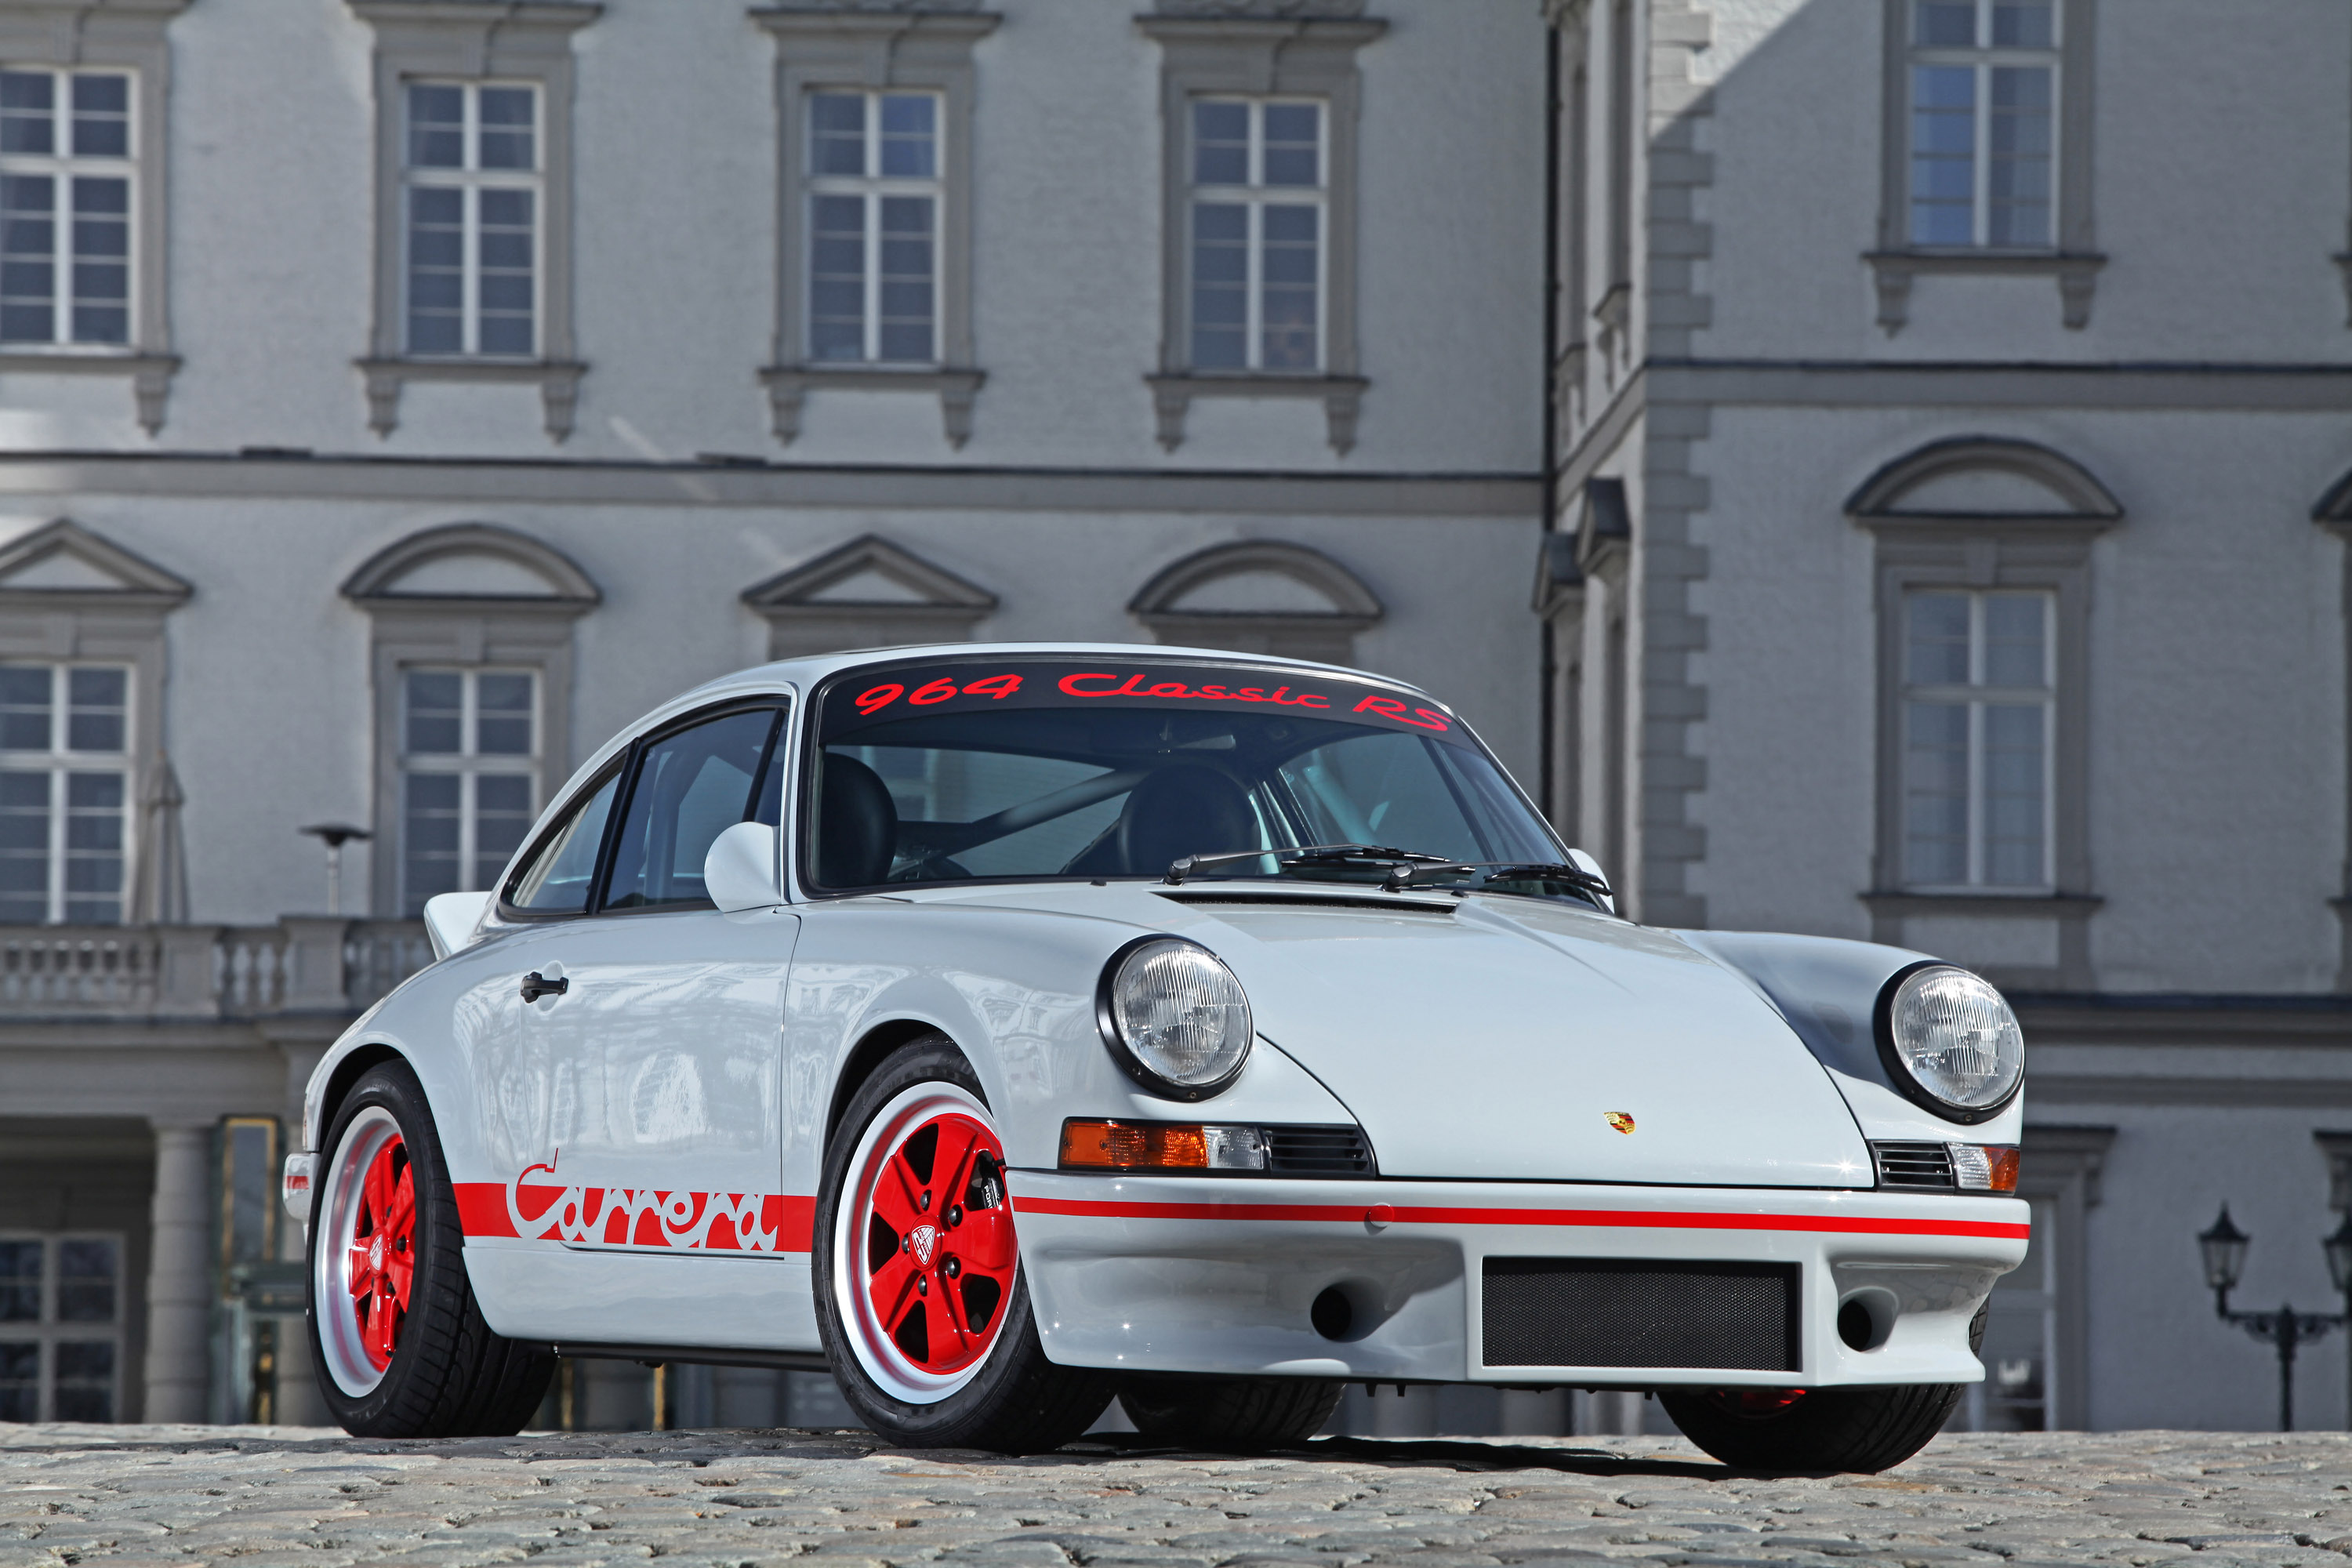 Télécharger des fonds d'écran Porsche 911 Carrera Rs HD